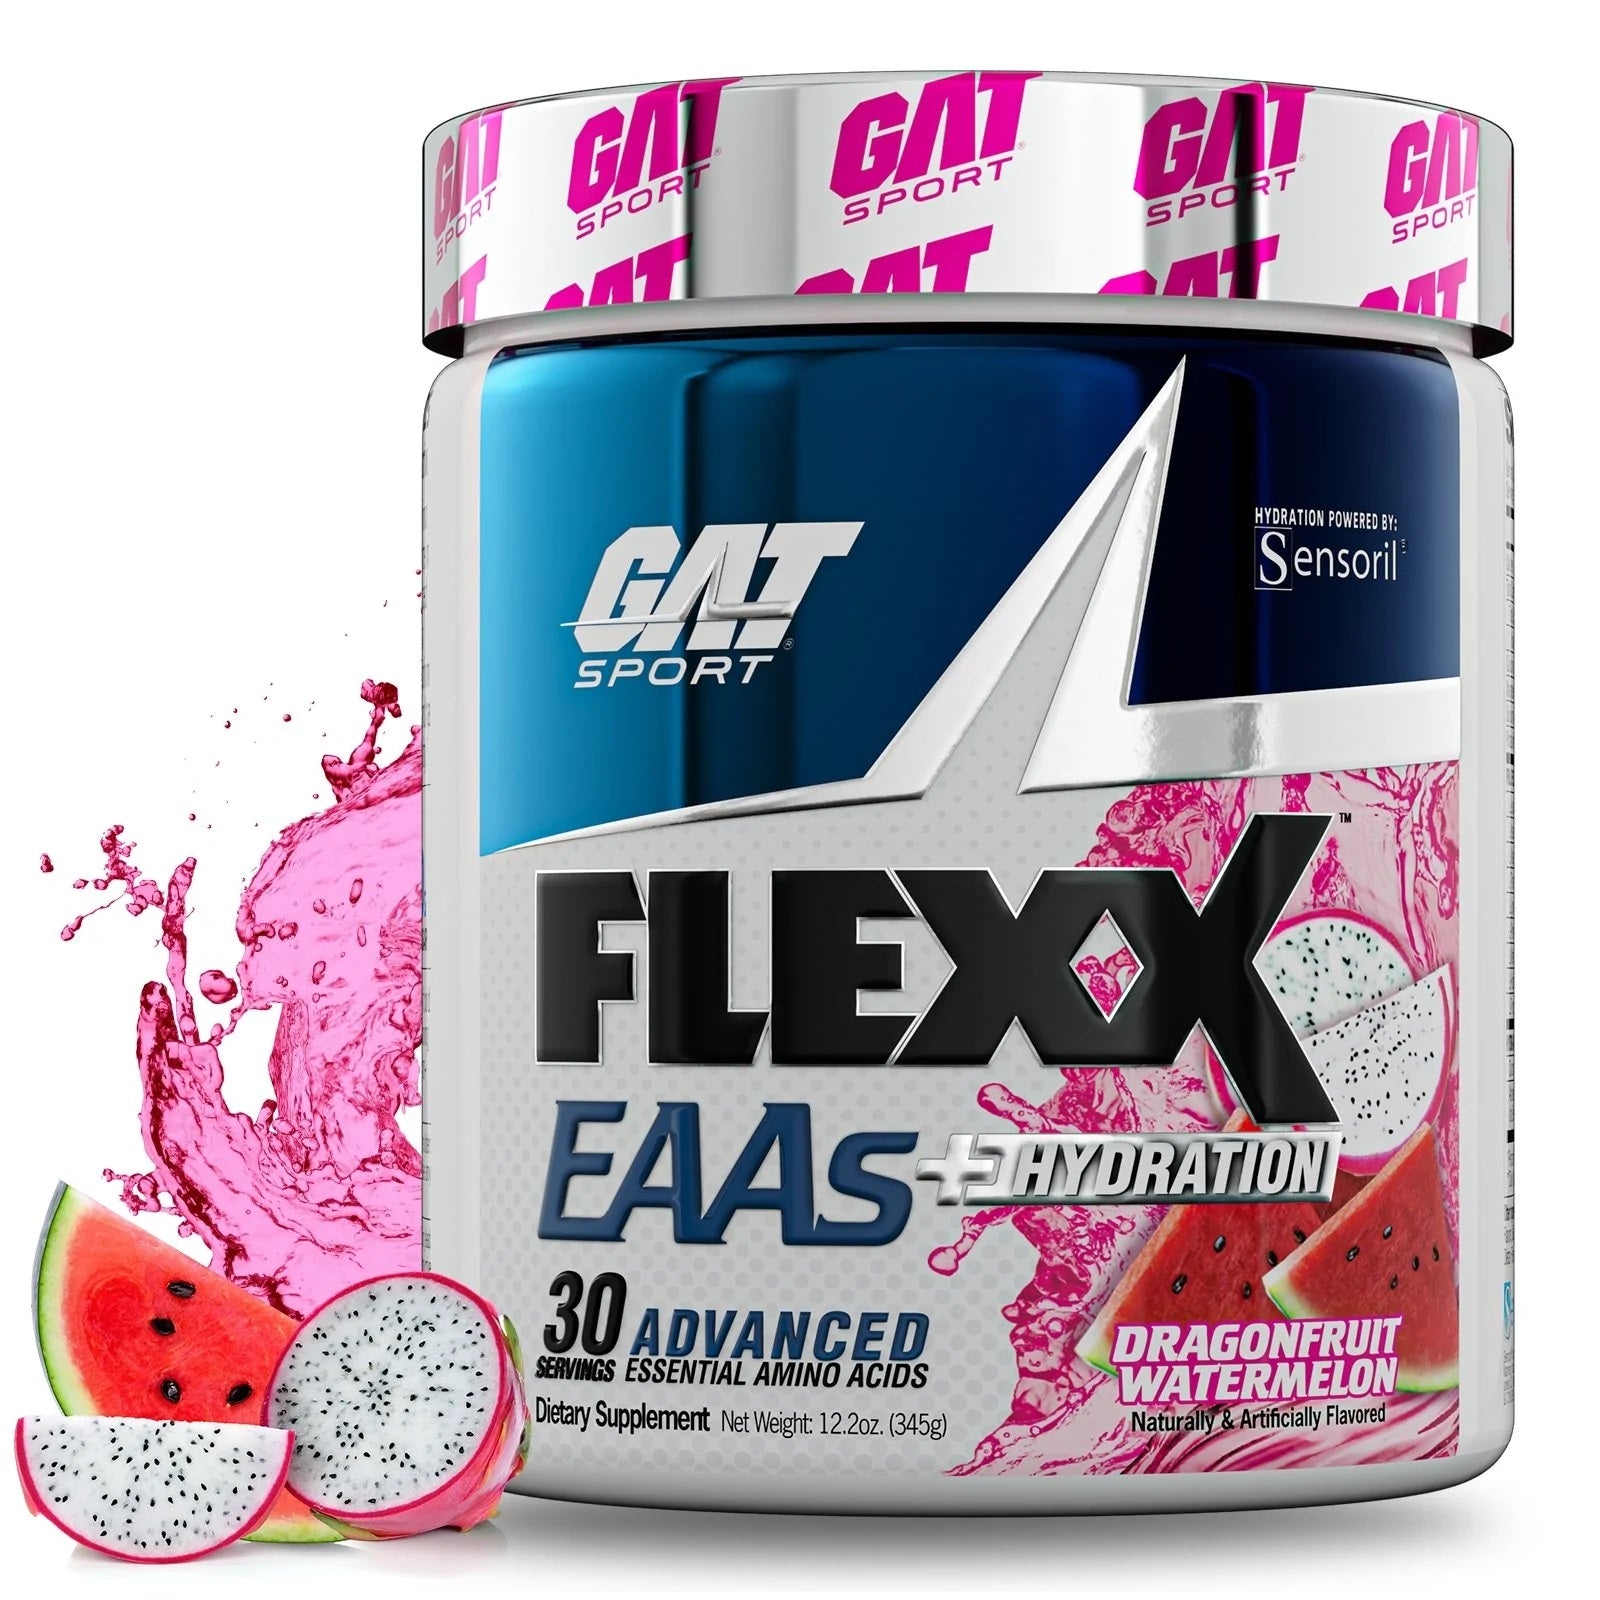 GAT Sport FLEXX EAAs Hydration muscle recovery